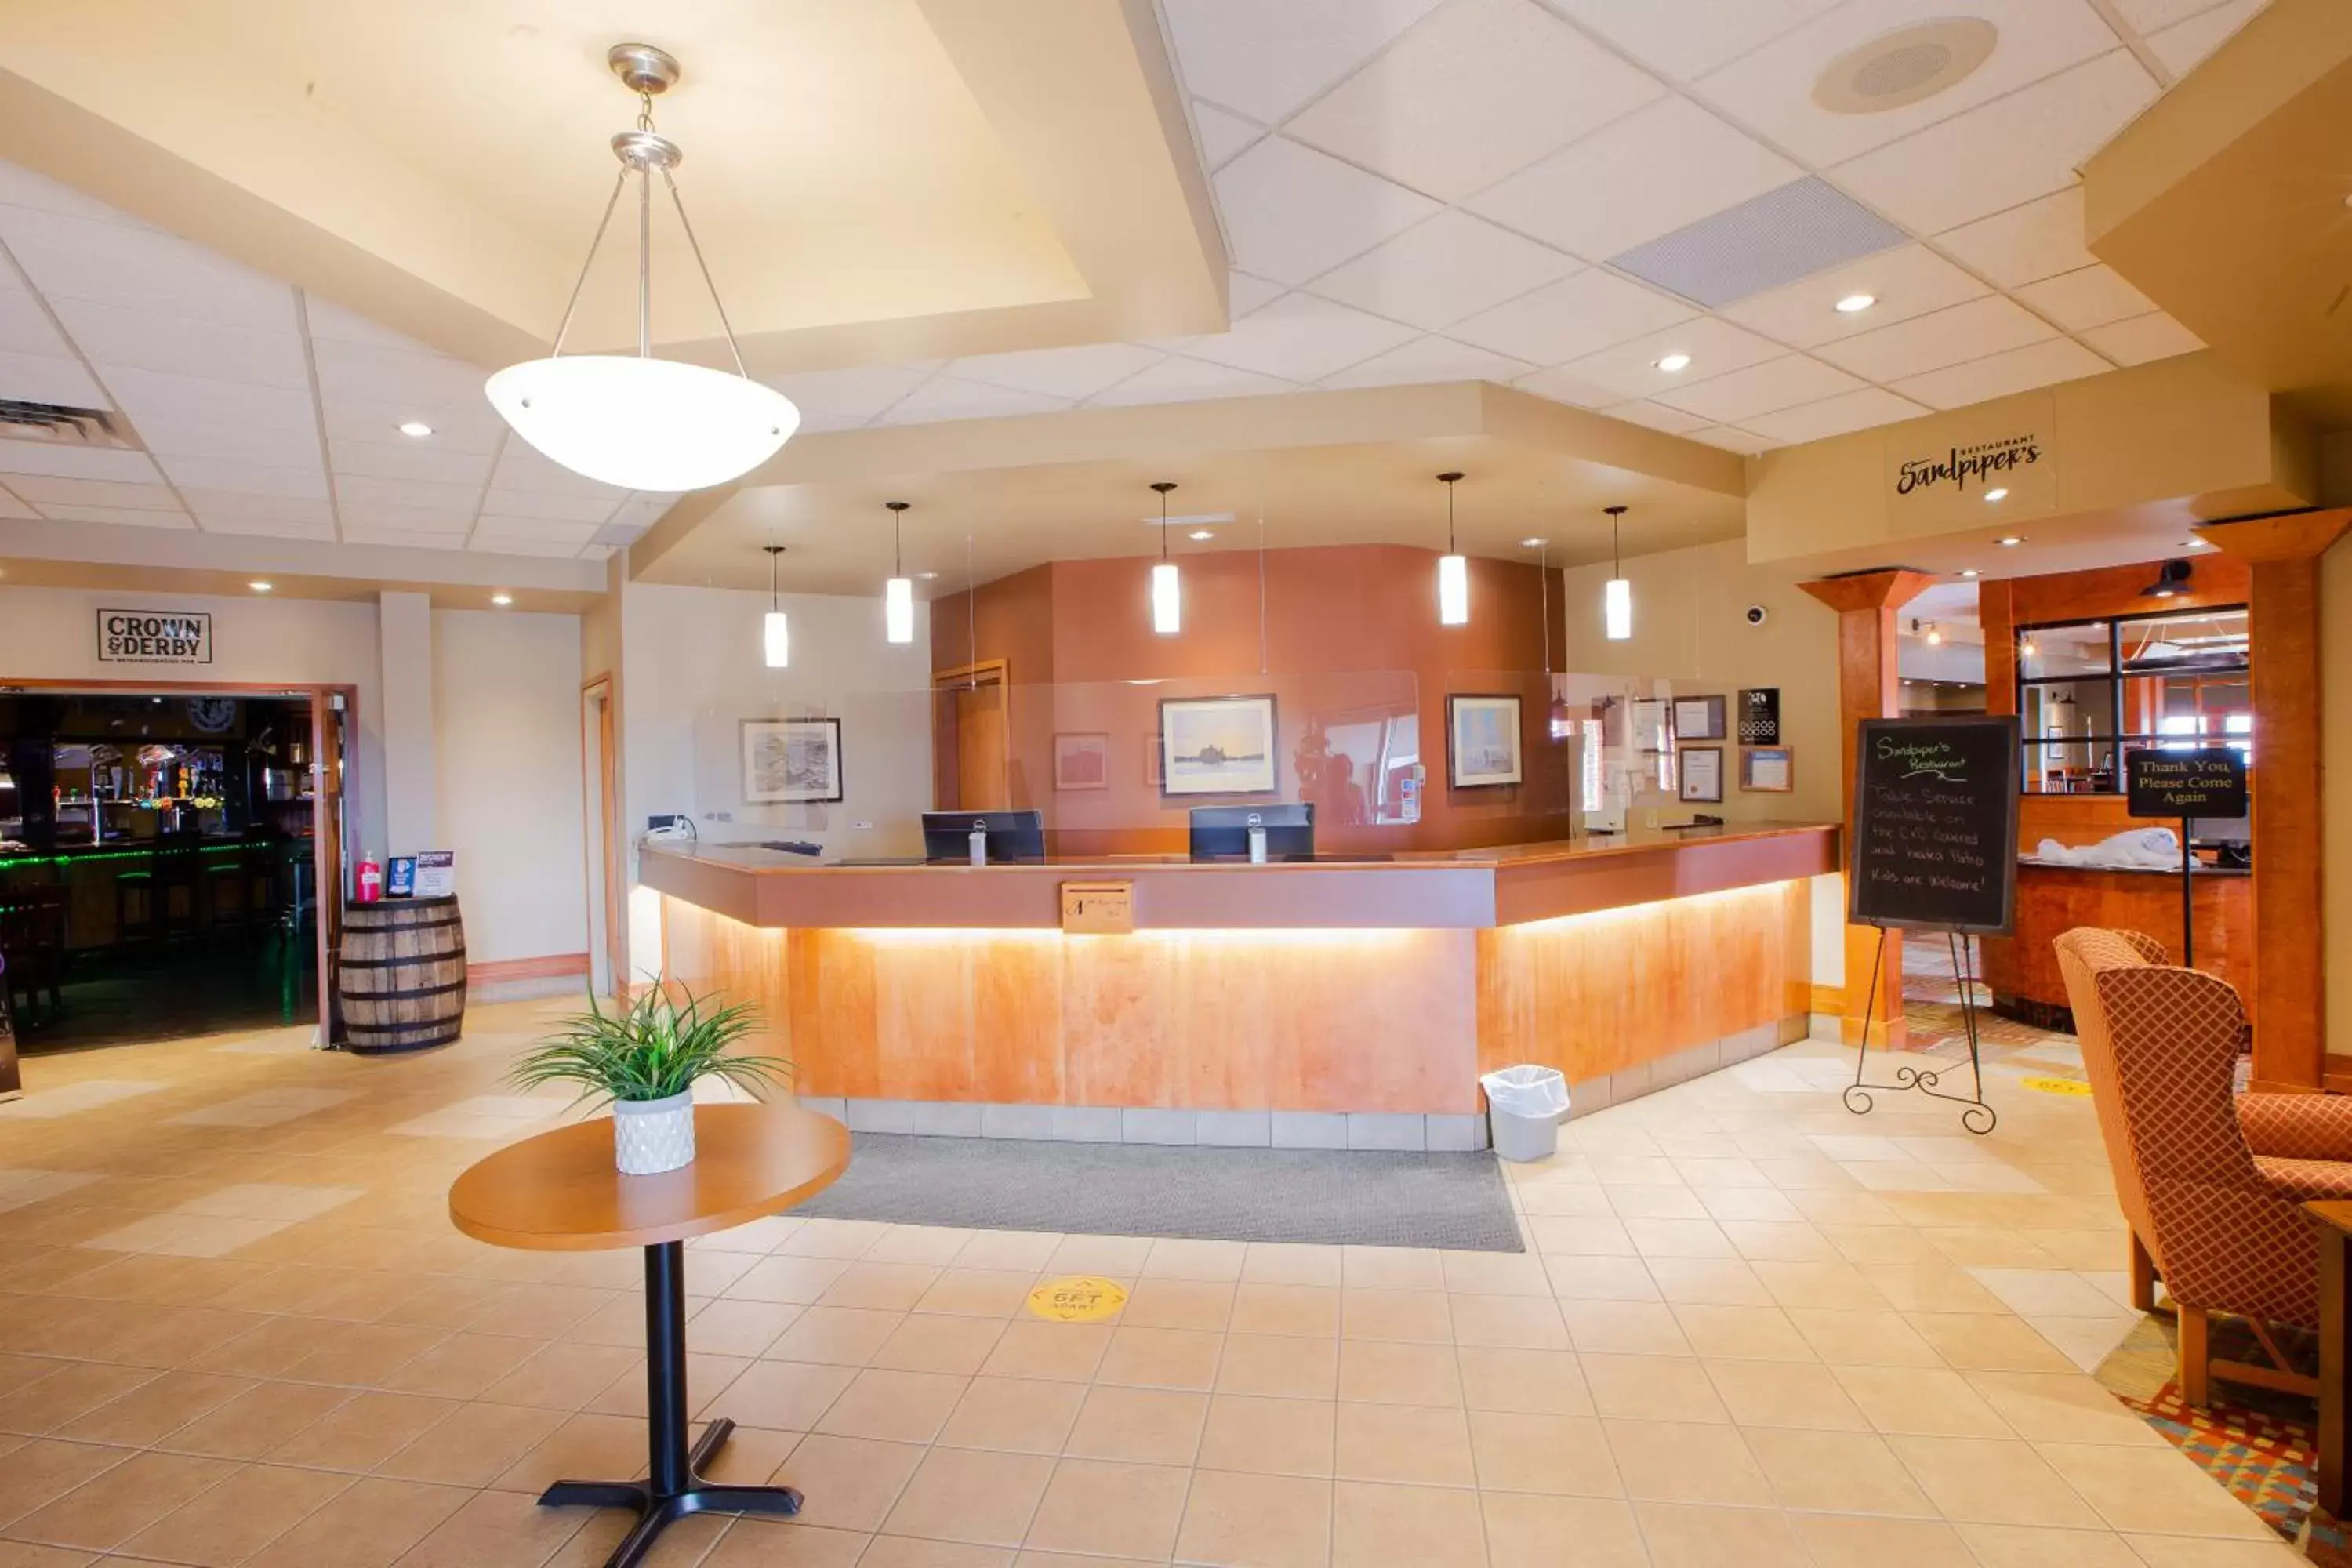 Lobby or reception, Lobby/Reception in Neighbourhood Inn Hotels in Bonnyville